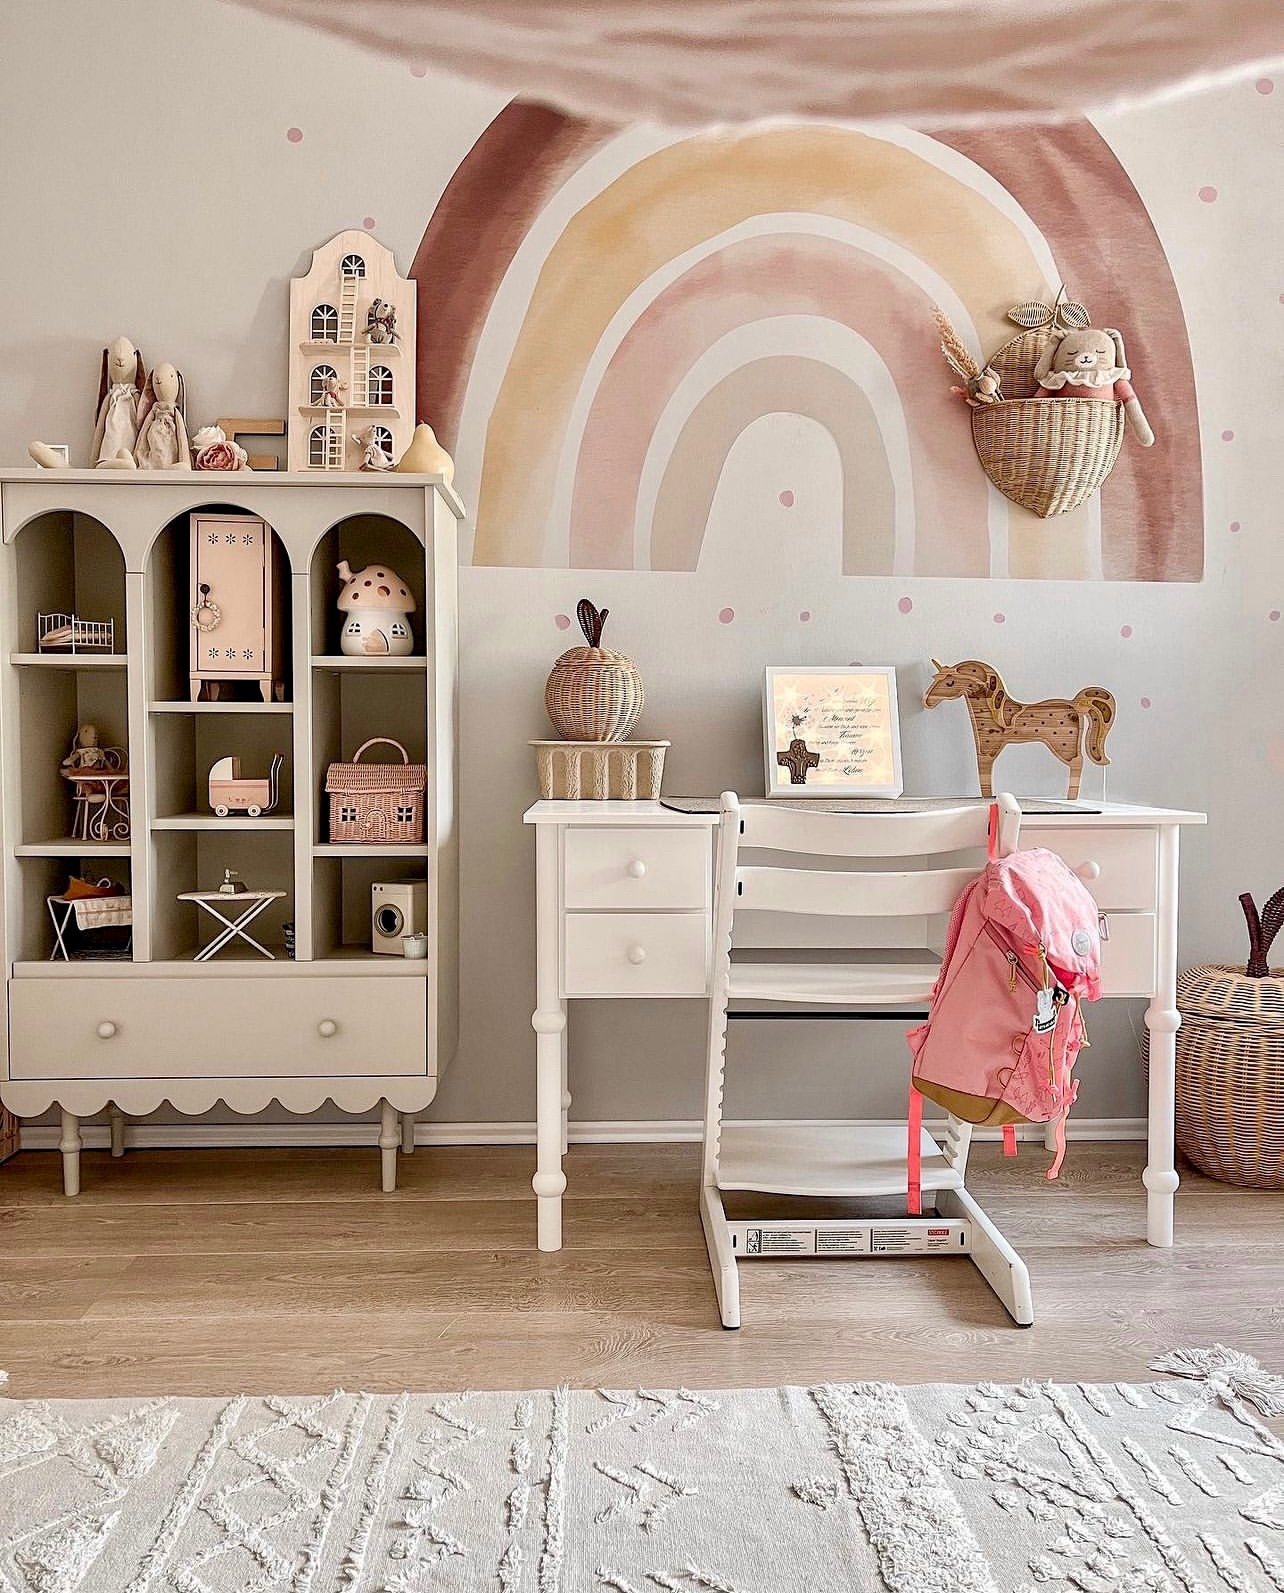 Wir lieben das Kinderzimmer von 📷 @houseofox! 🧡 Wie gefällt es euch?

Den XL-Regenbogen an der Wand haben wir in 2 Größen im Shop: 100 und 180 cm breit. Die schönen warmen Farben bringen so viel Gemütlichkeit ins Kinderzimmer!
𝘄𝘄𝘄.𝗺𝘆-𝗳𝗮𝗻𝘁𝗮𝘀𝘆𝗿𝗼𝗼𝗺.𝗱𝗲 ✨